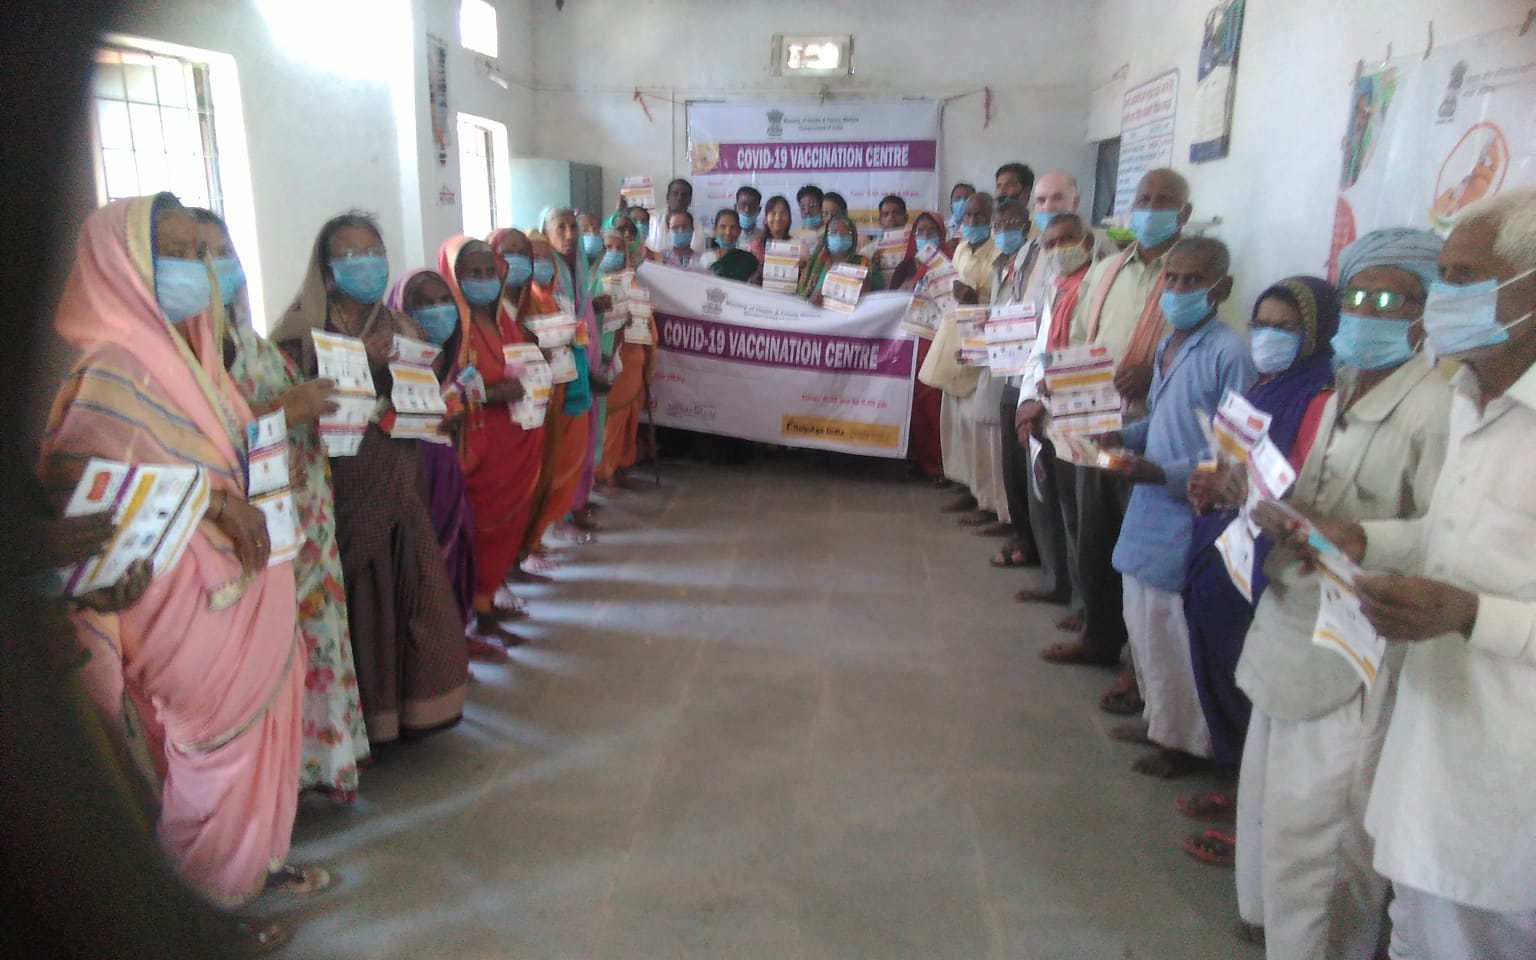 सामुदायिक स्वास्थ्य केन्द्र में M-RITE प्रोजेक्ट के अन्तर्गत किया गया कोविड 19 टीकाकरण कैंप का आयोजन | New India Times